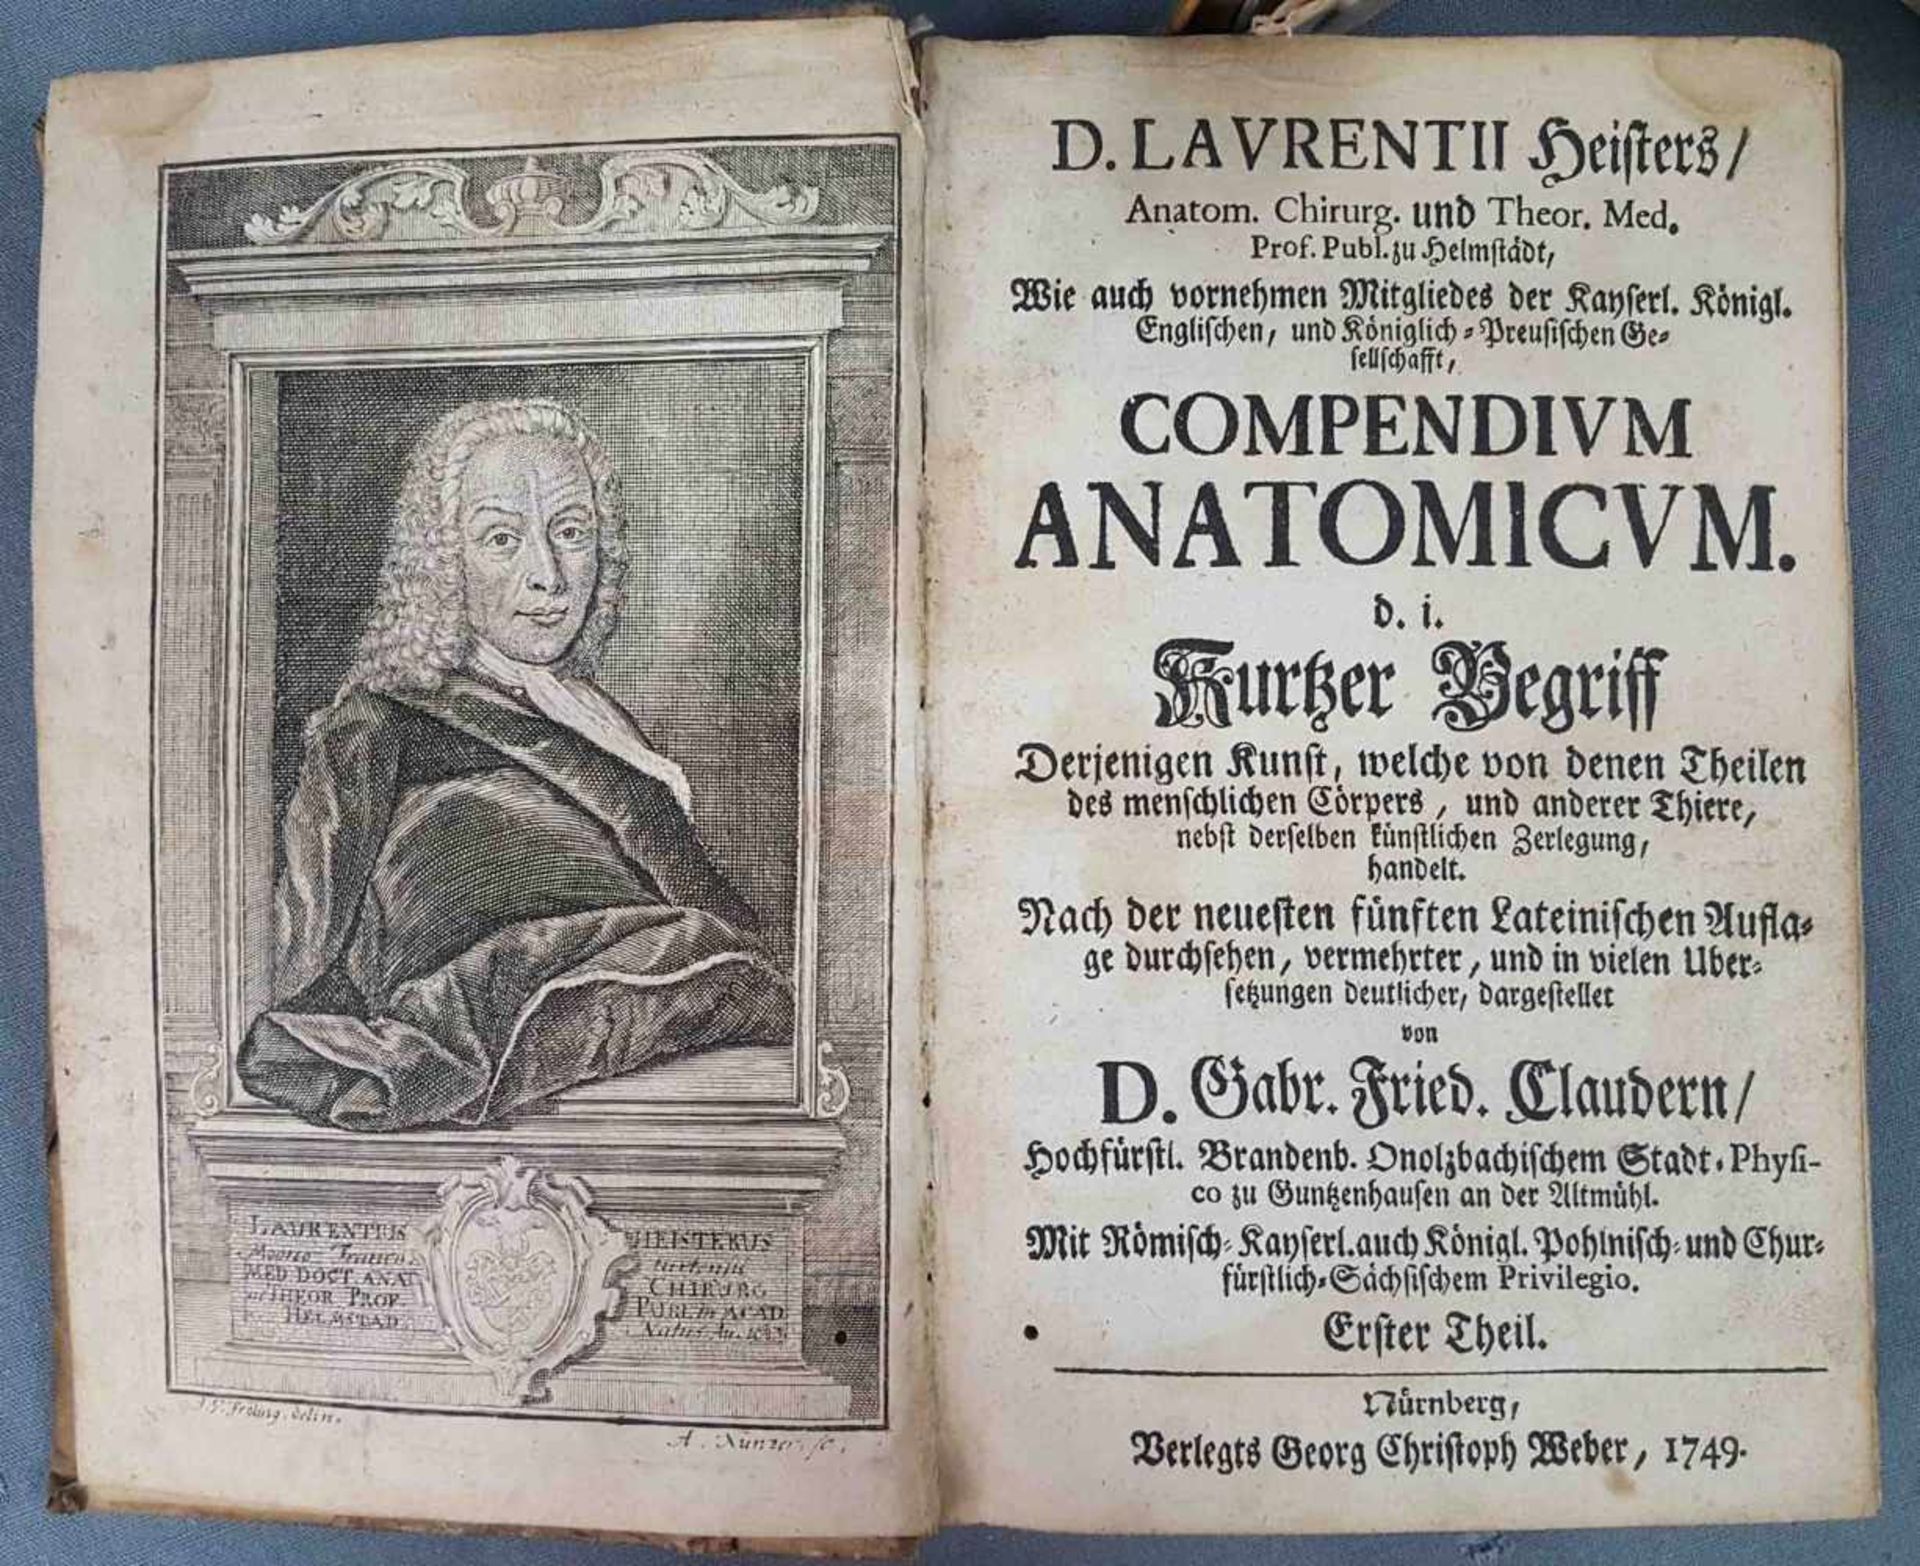 Heisters D. LAURENTII: "COMPENDIUM ANATOMICUM", 1749. - Image 6 of 13